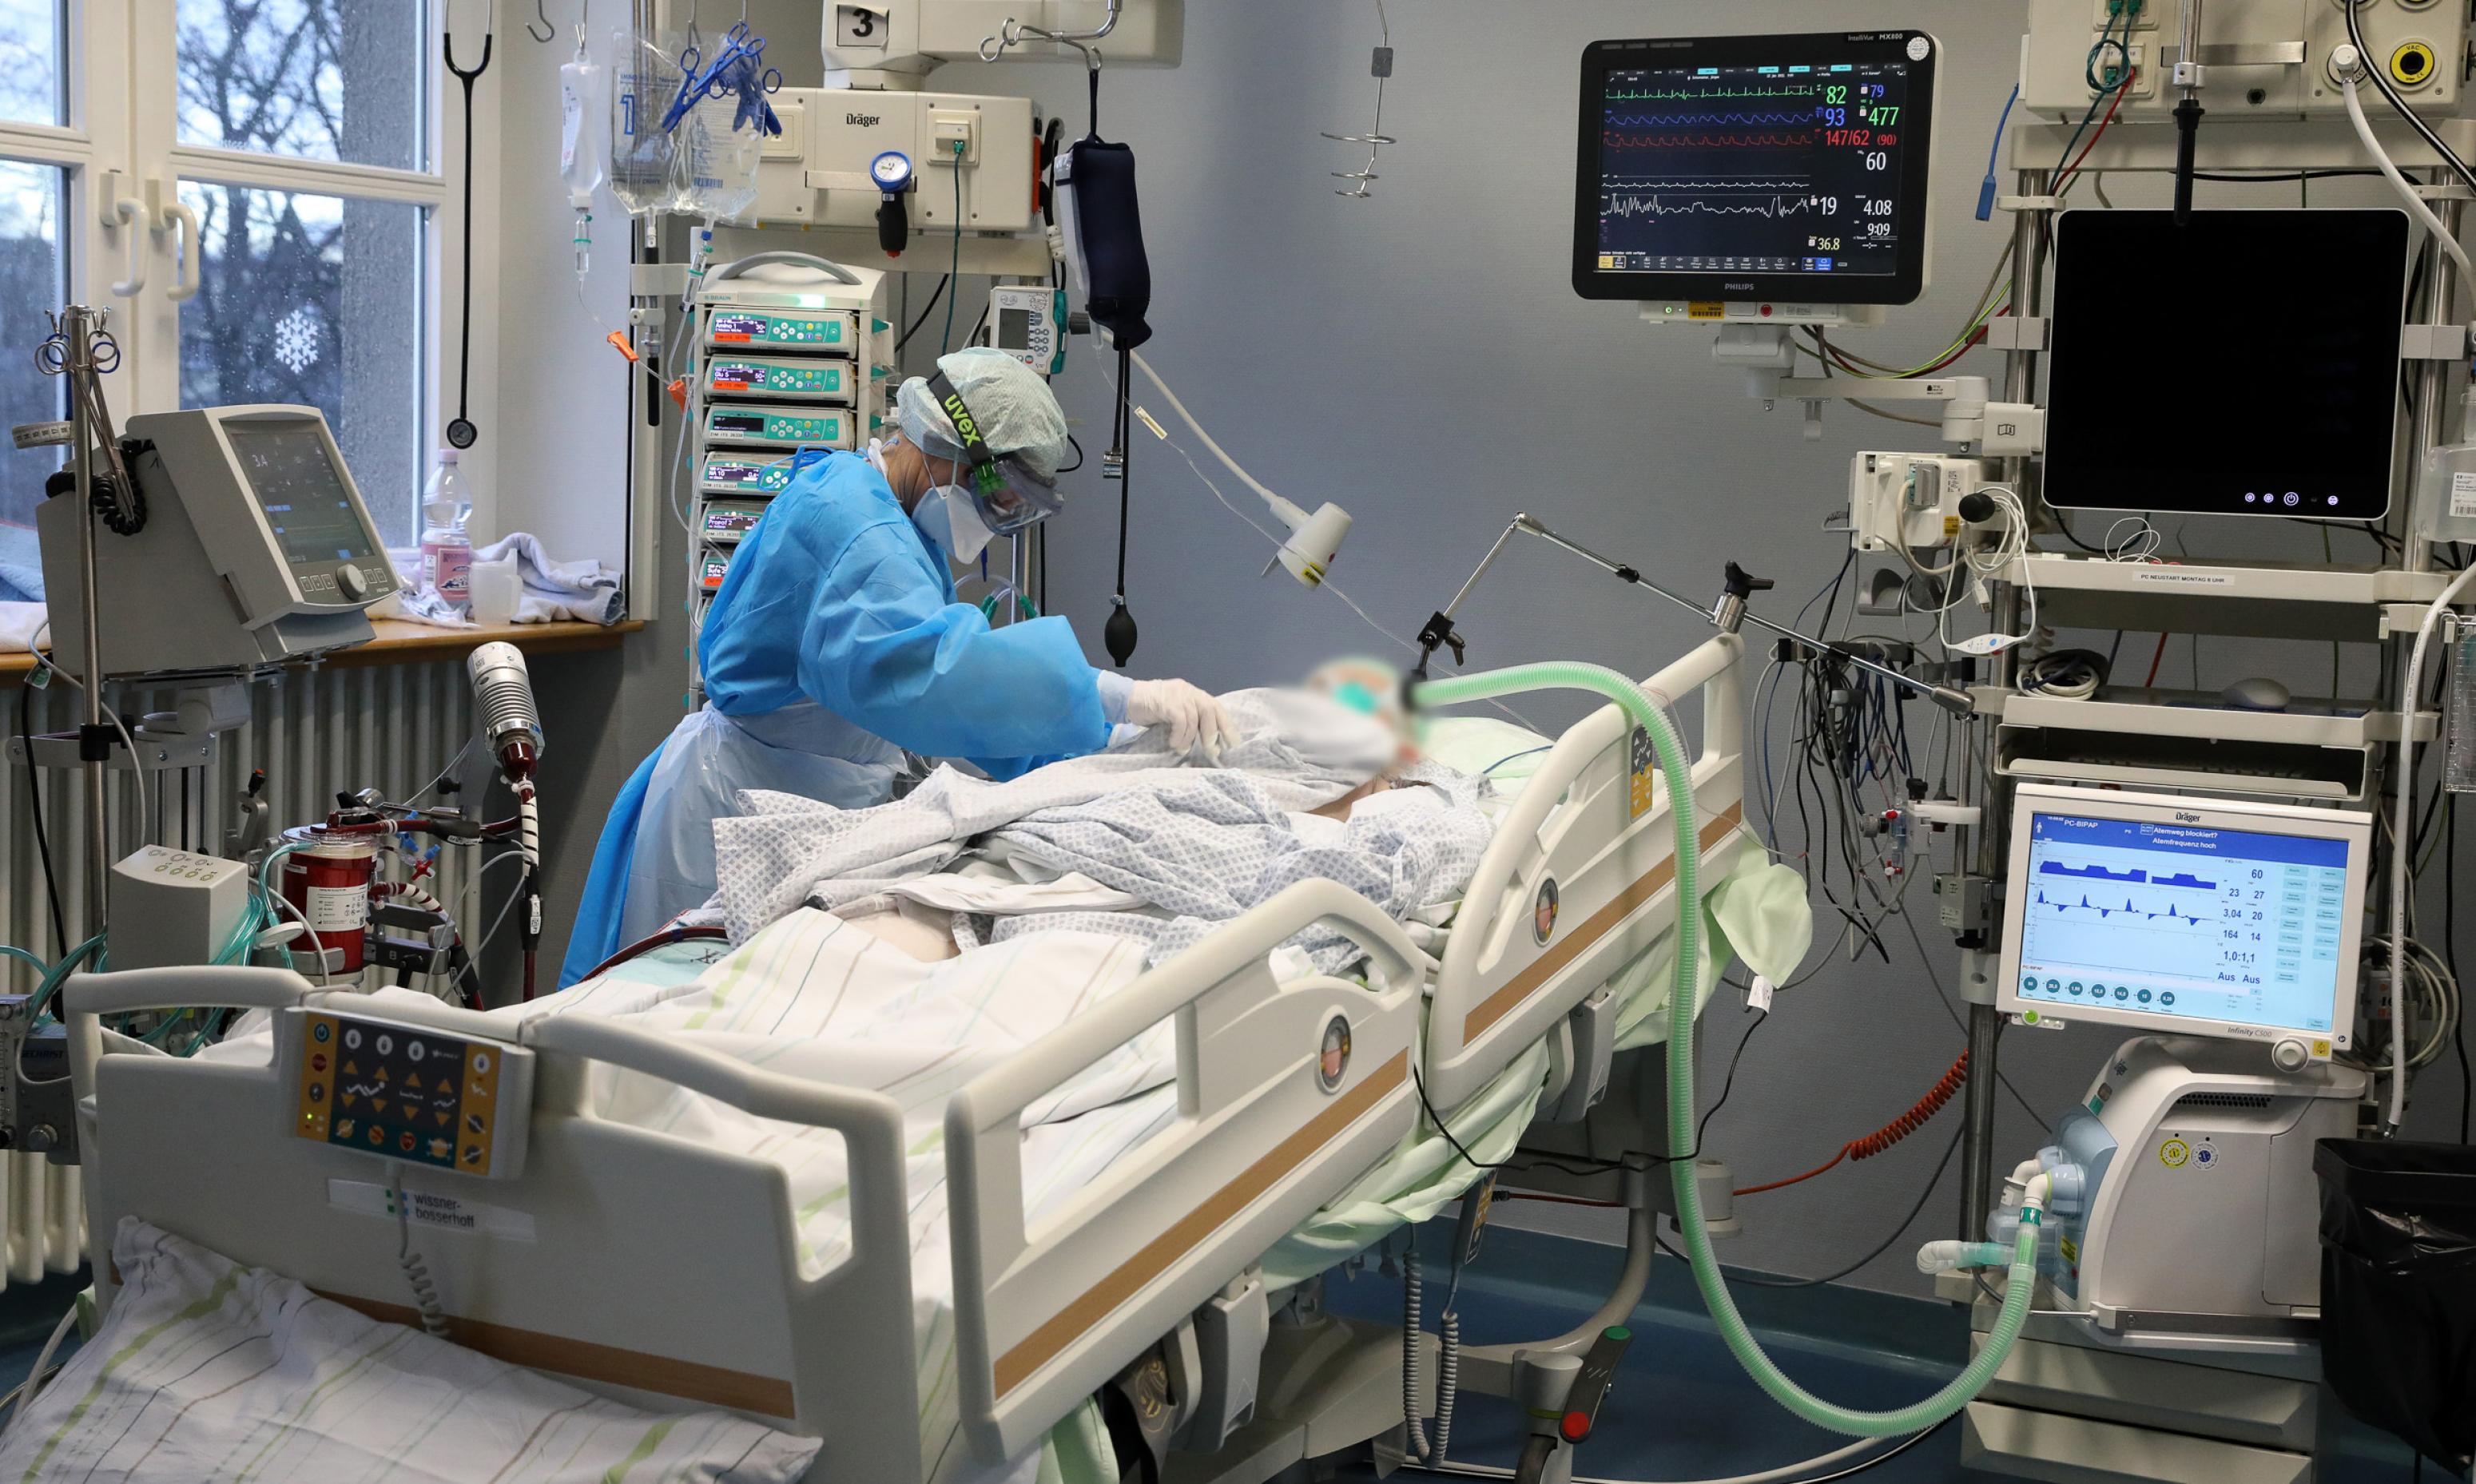 Ein Krankenbett mit einem Patienten in weißem Hemdchen. Rundherum medizinische Geräte mit Bildschirmen. Eine Person in blauem Schutzanzug mit Schütze, Gesichtsmaske, Haube, Handschuhen und Skibrille beugt sich über den Patienten.